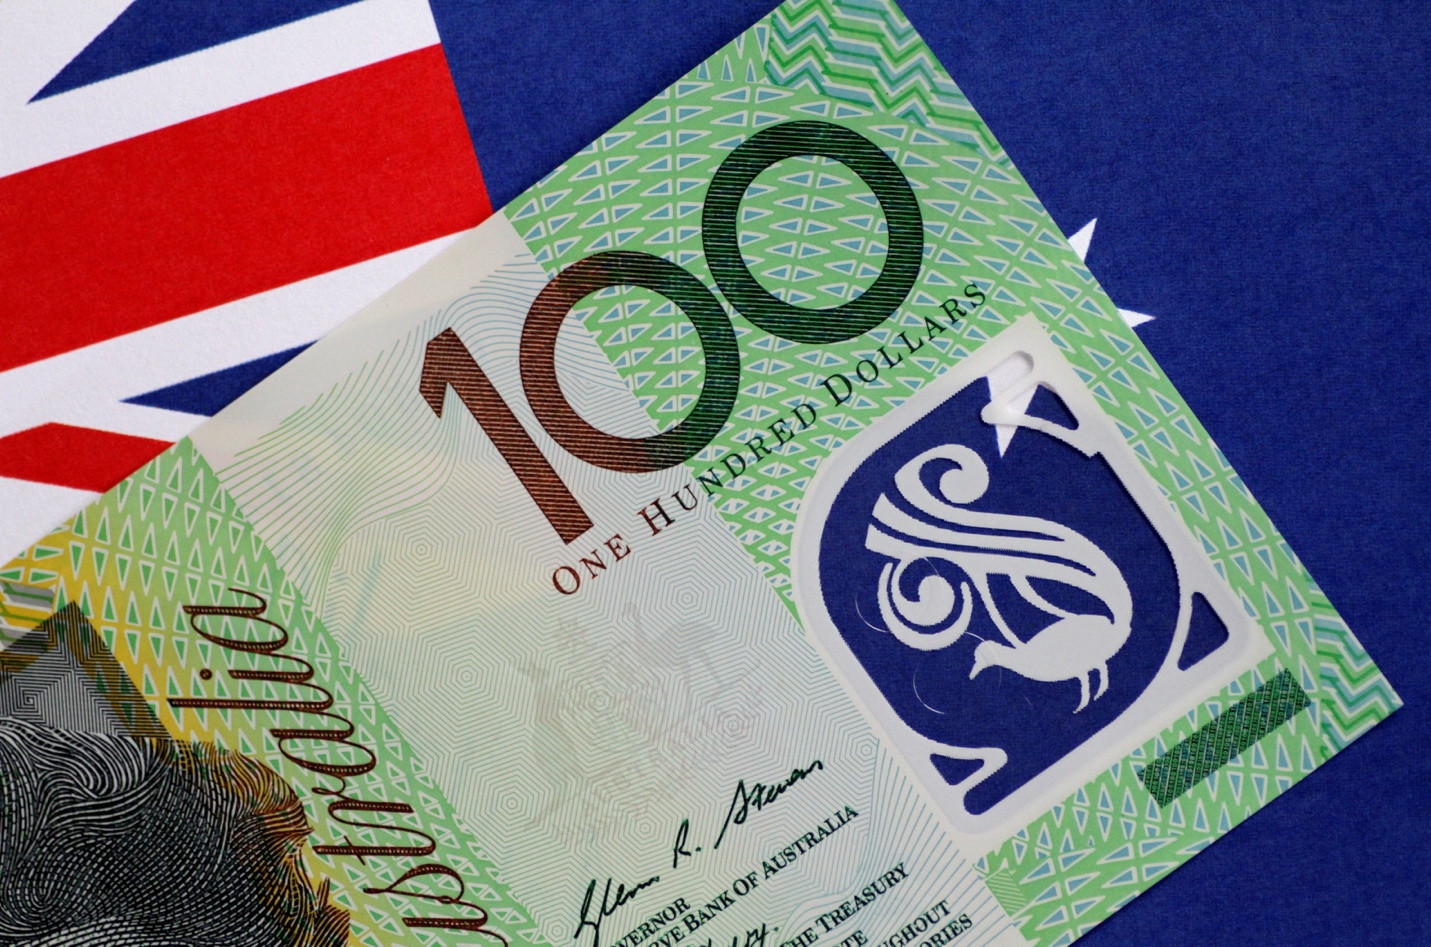 پول رایج استرالیا